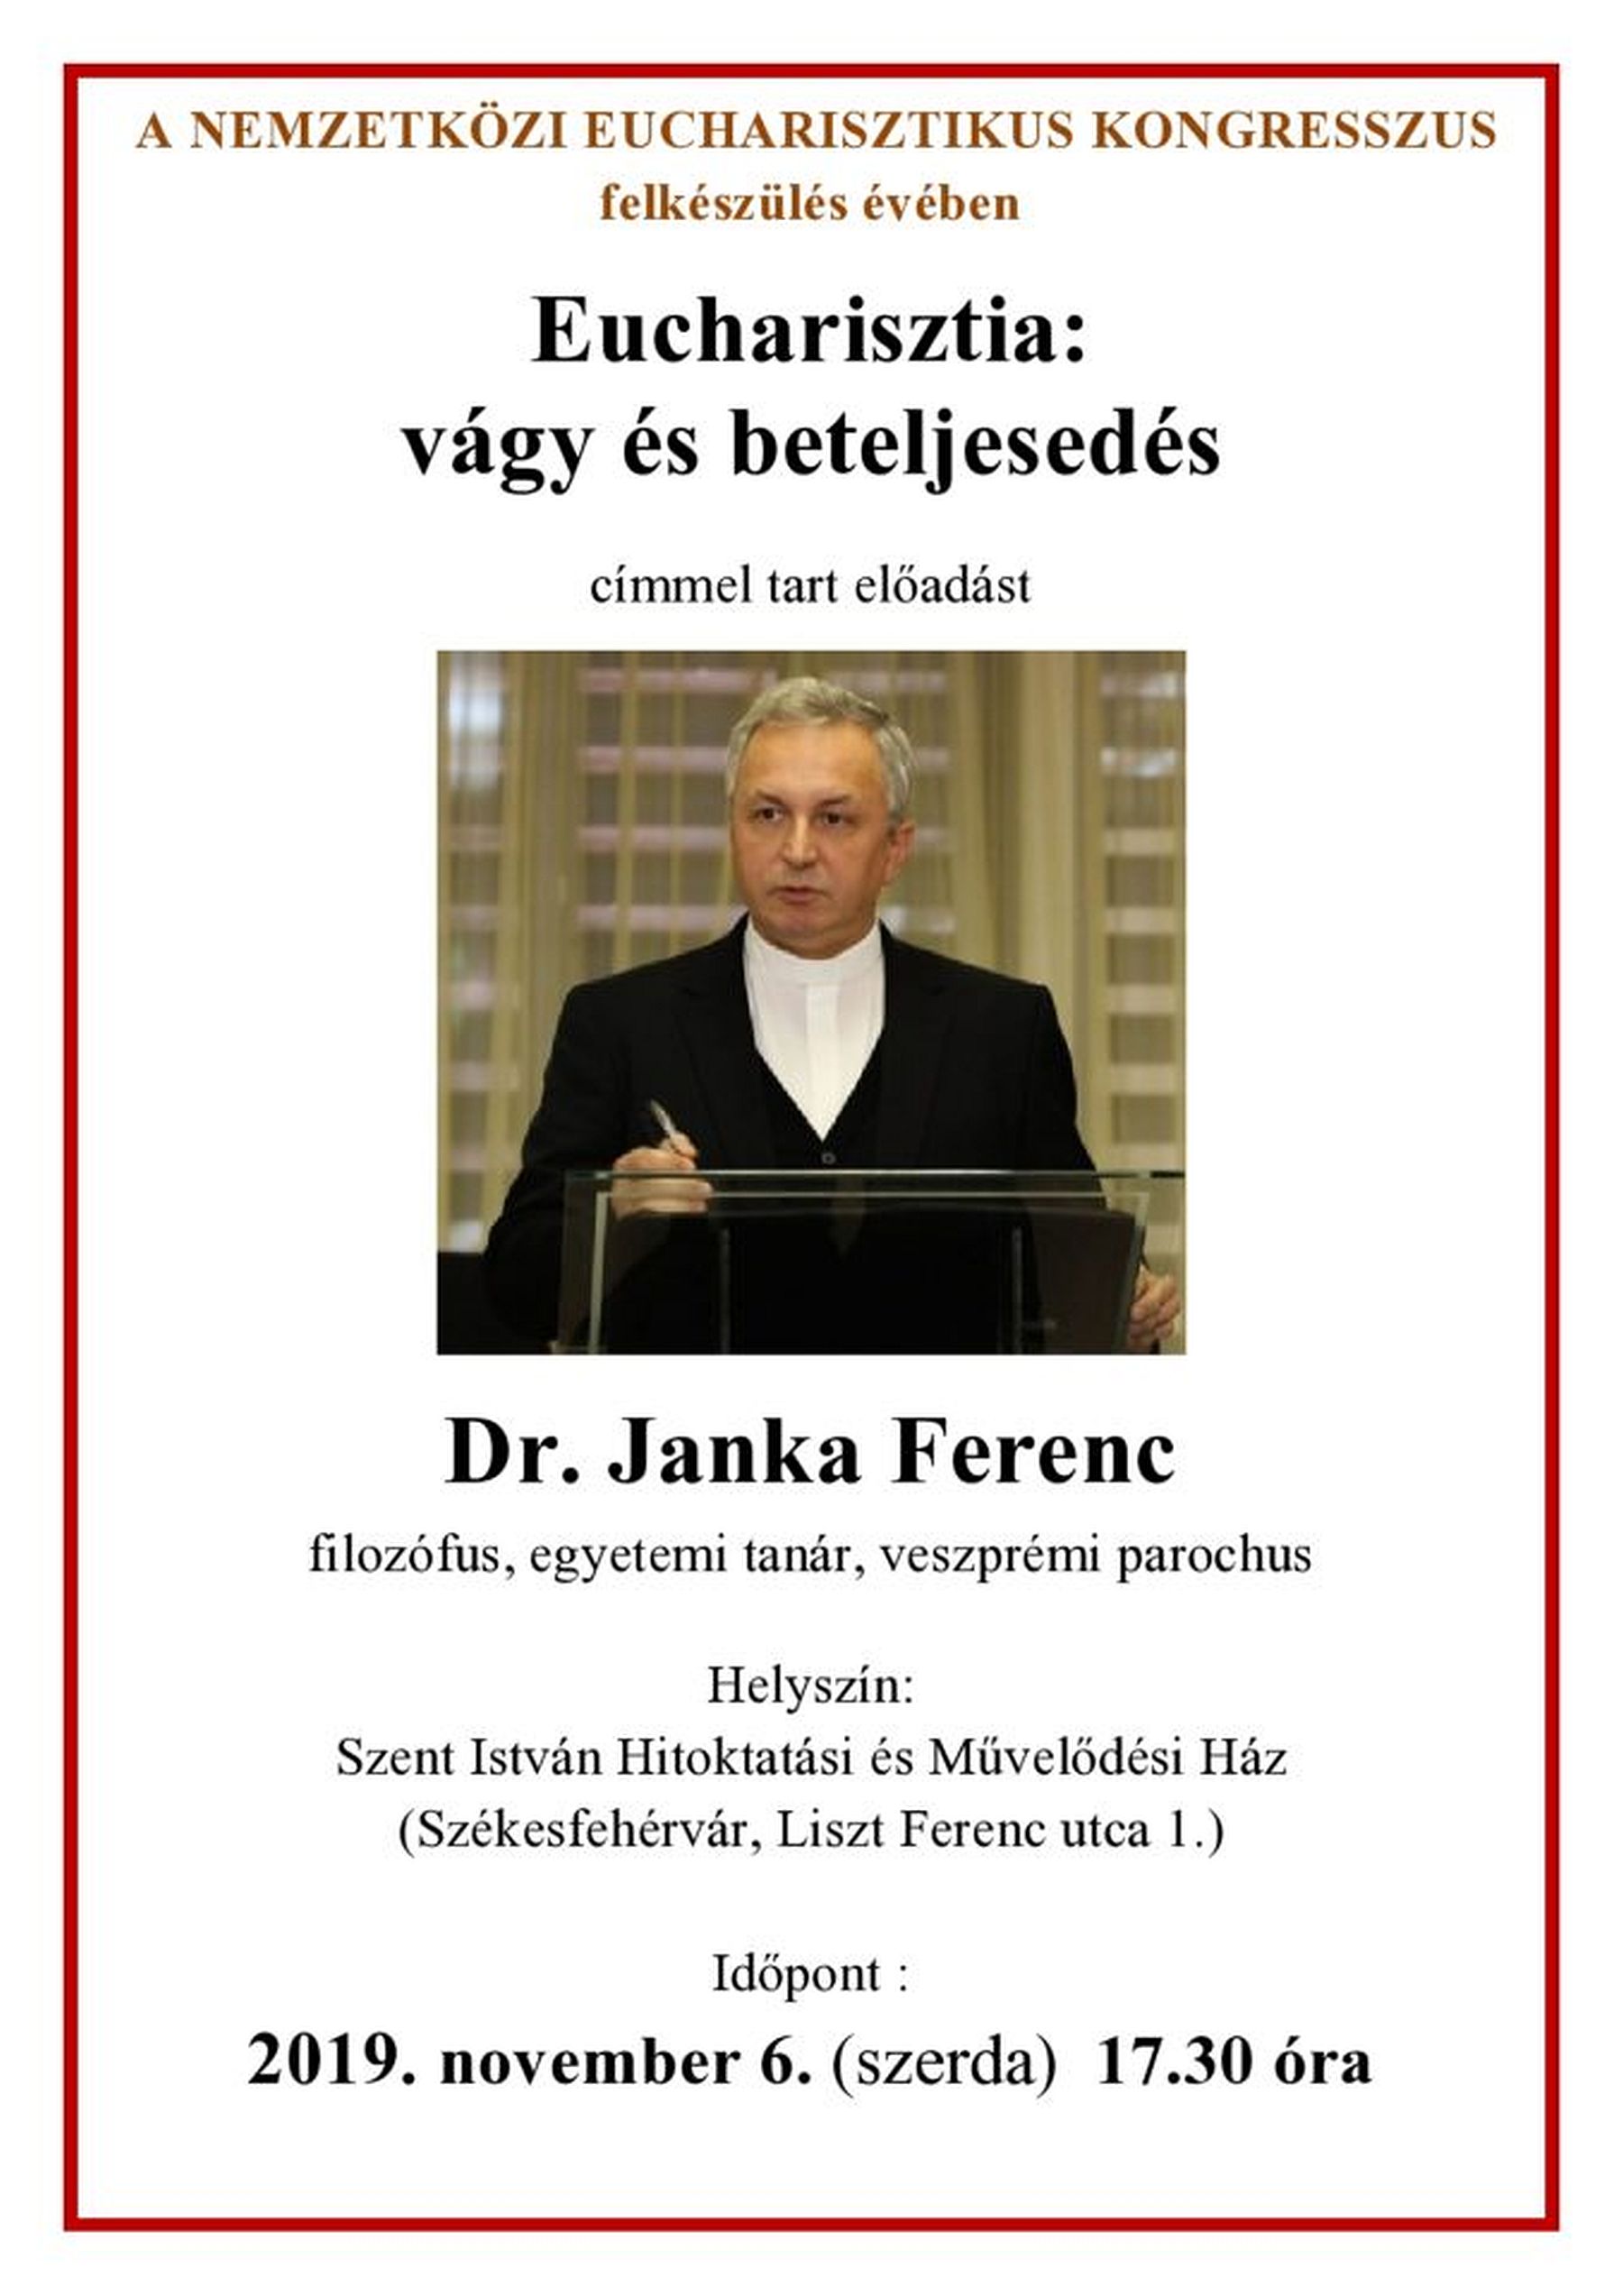 Eucharisztia: vágy és beteljesedés - Janka Ferenc előadása a Szent István Művelődési Házban